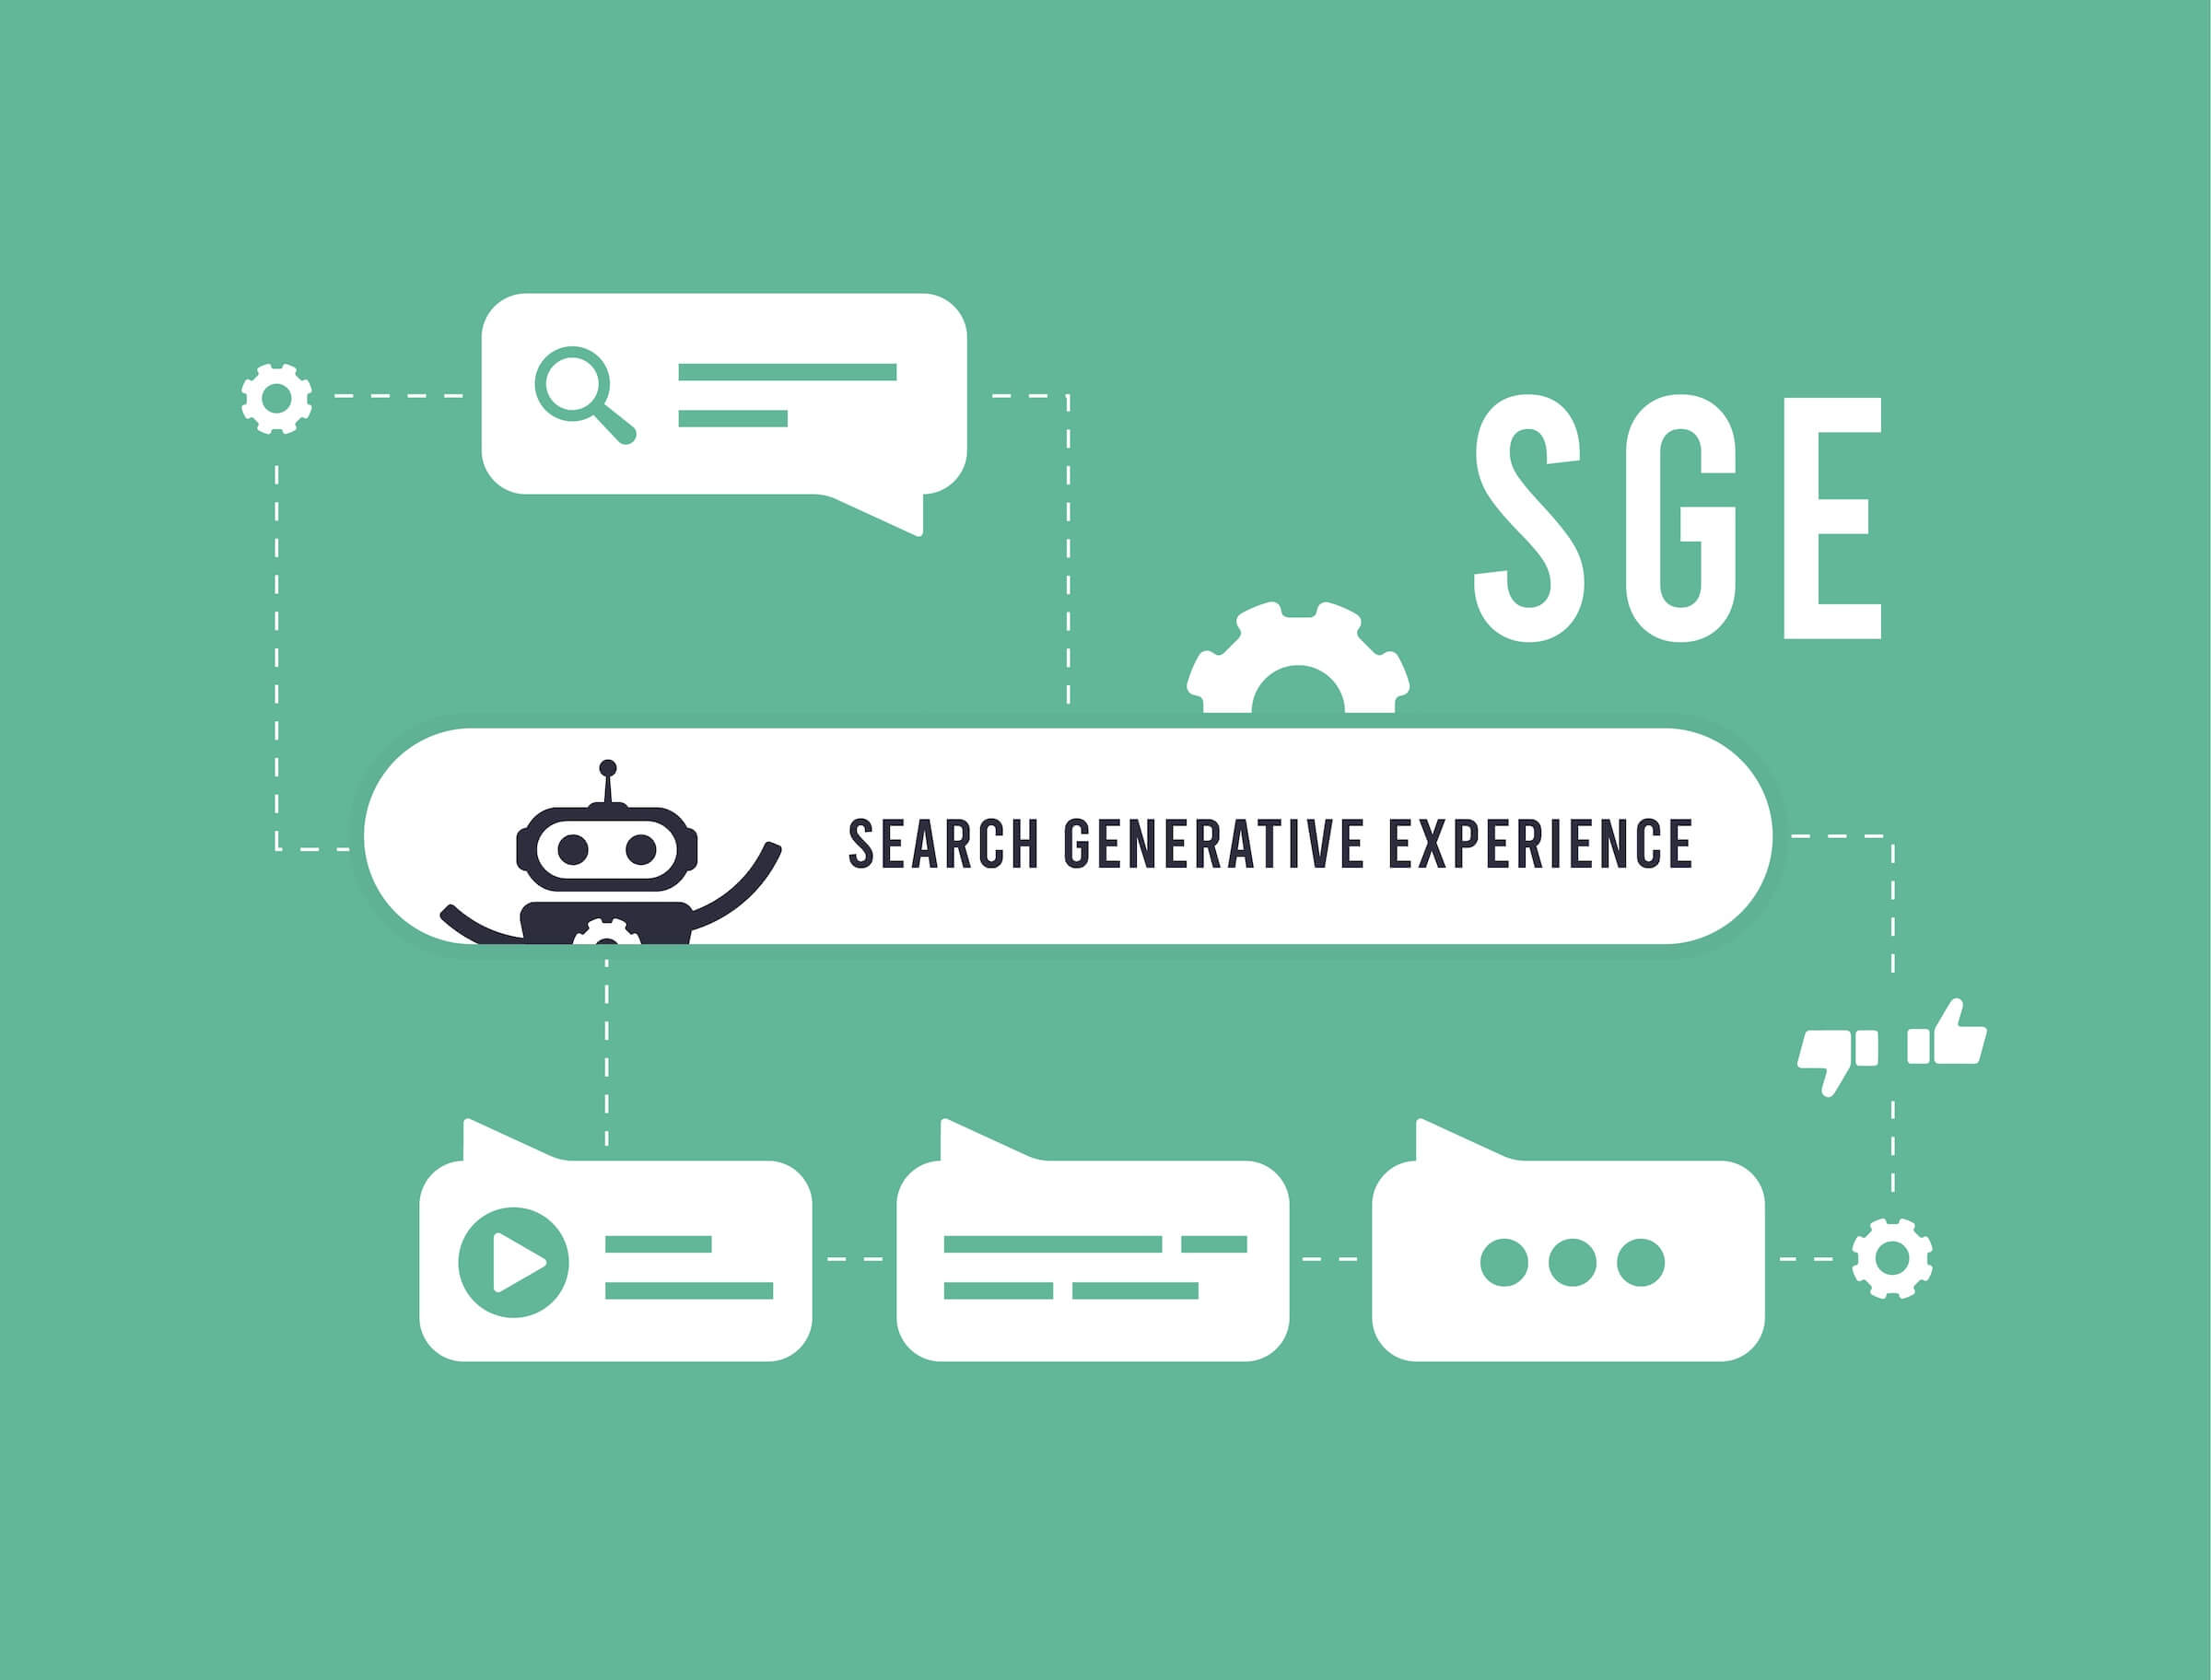 SGE - koncepcja generatywnego doświadczenia wyszukiwania. Generacyjne wyszukiwanie oparte na sztucznej inteligencji. Ilustracja wektorowa na zielonym tle z ikonami